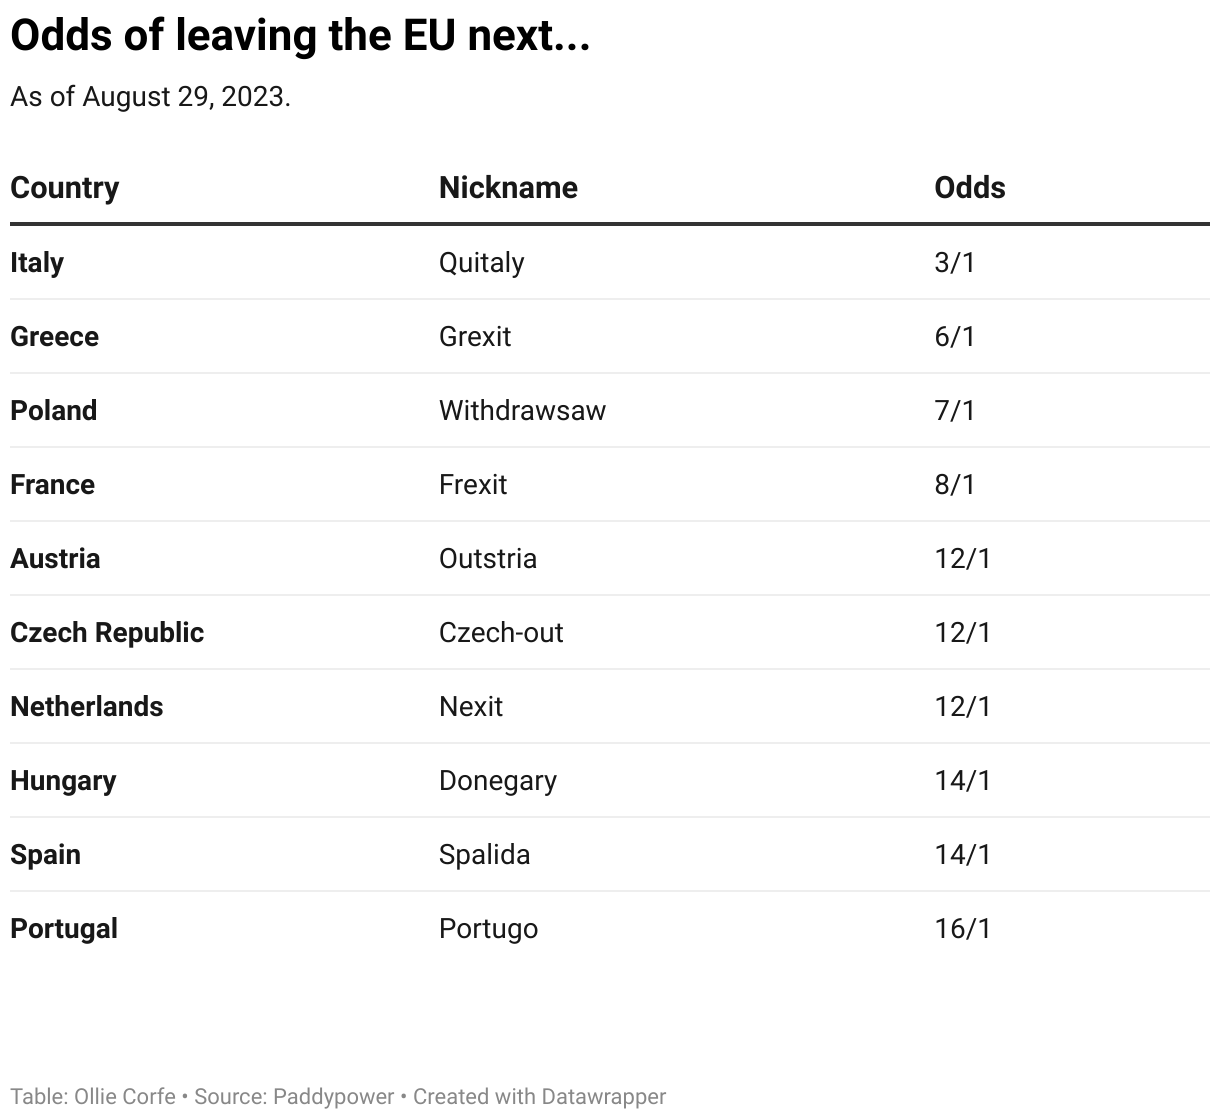 Odds of leaving the EU next.